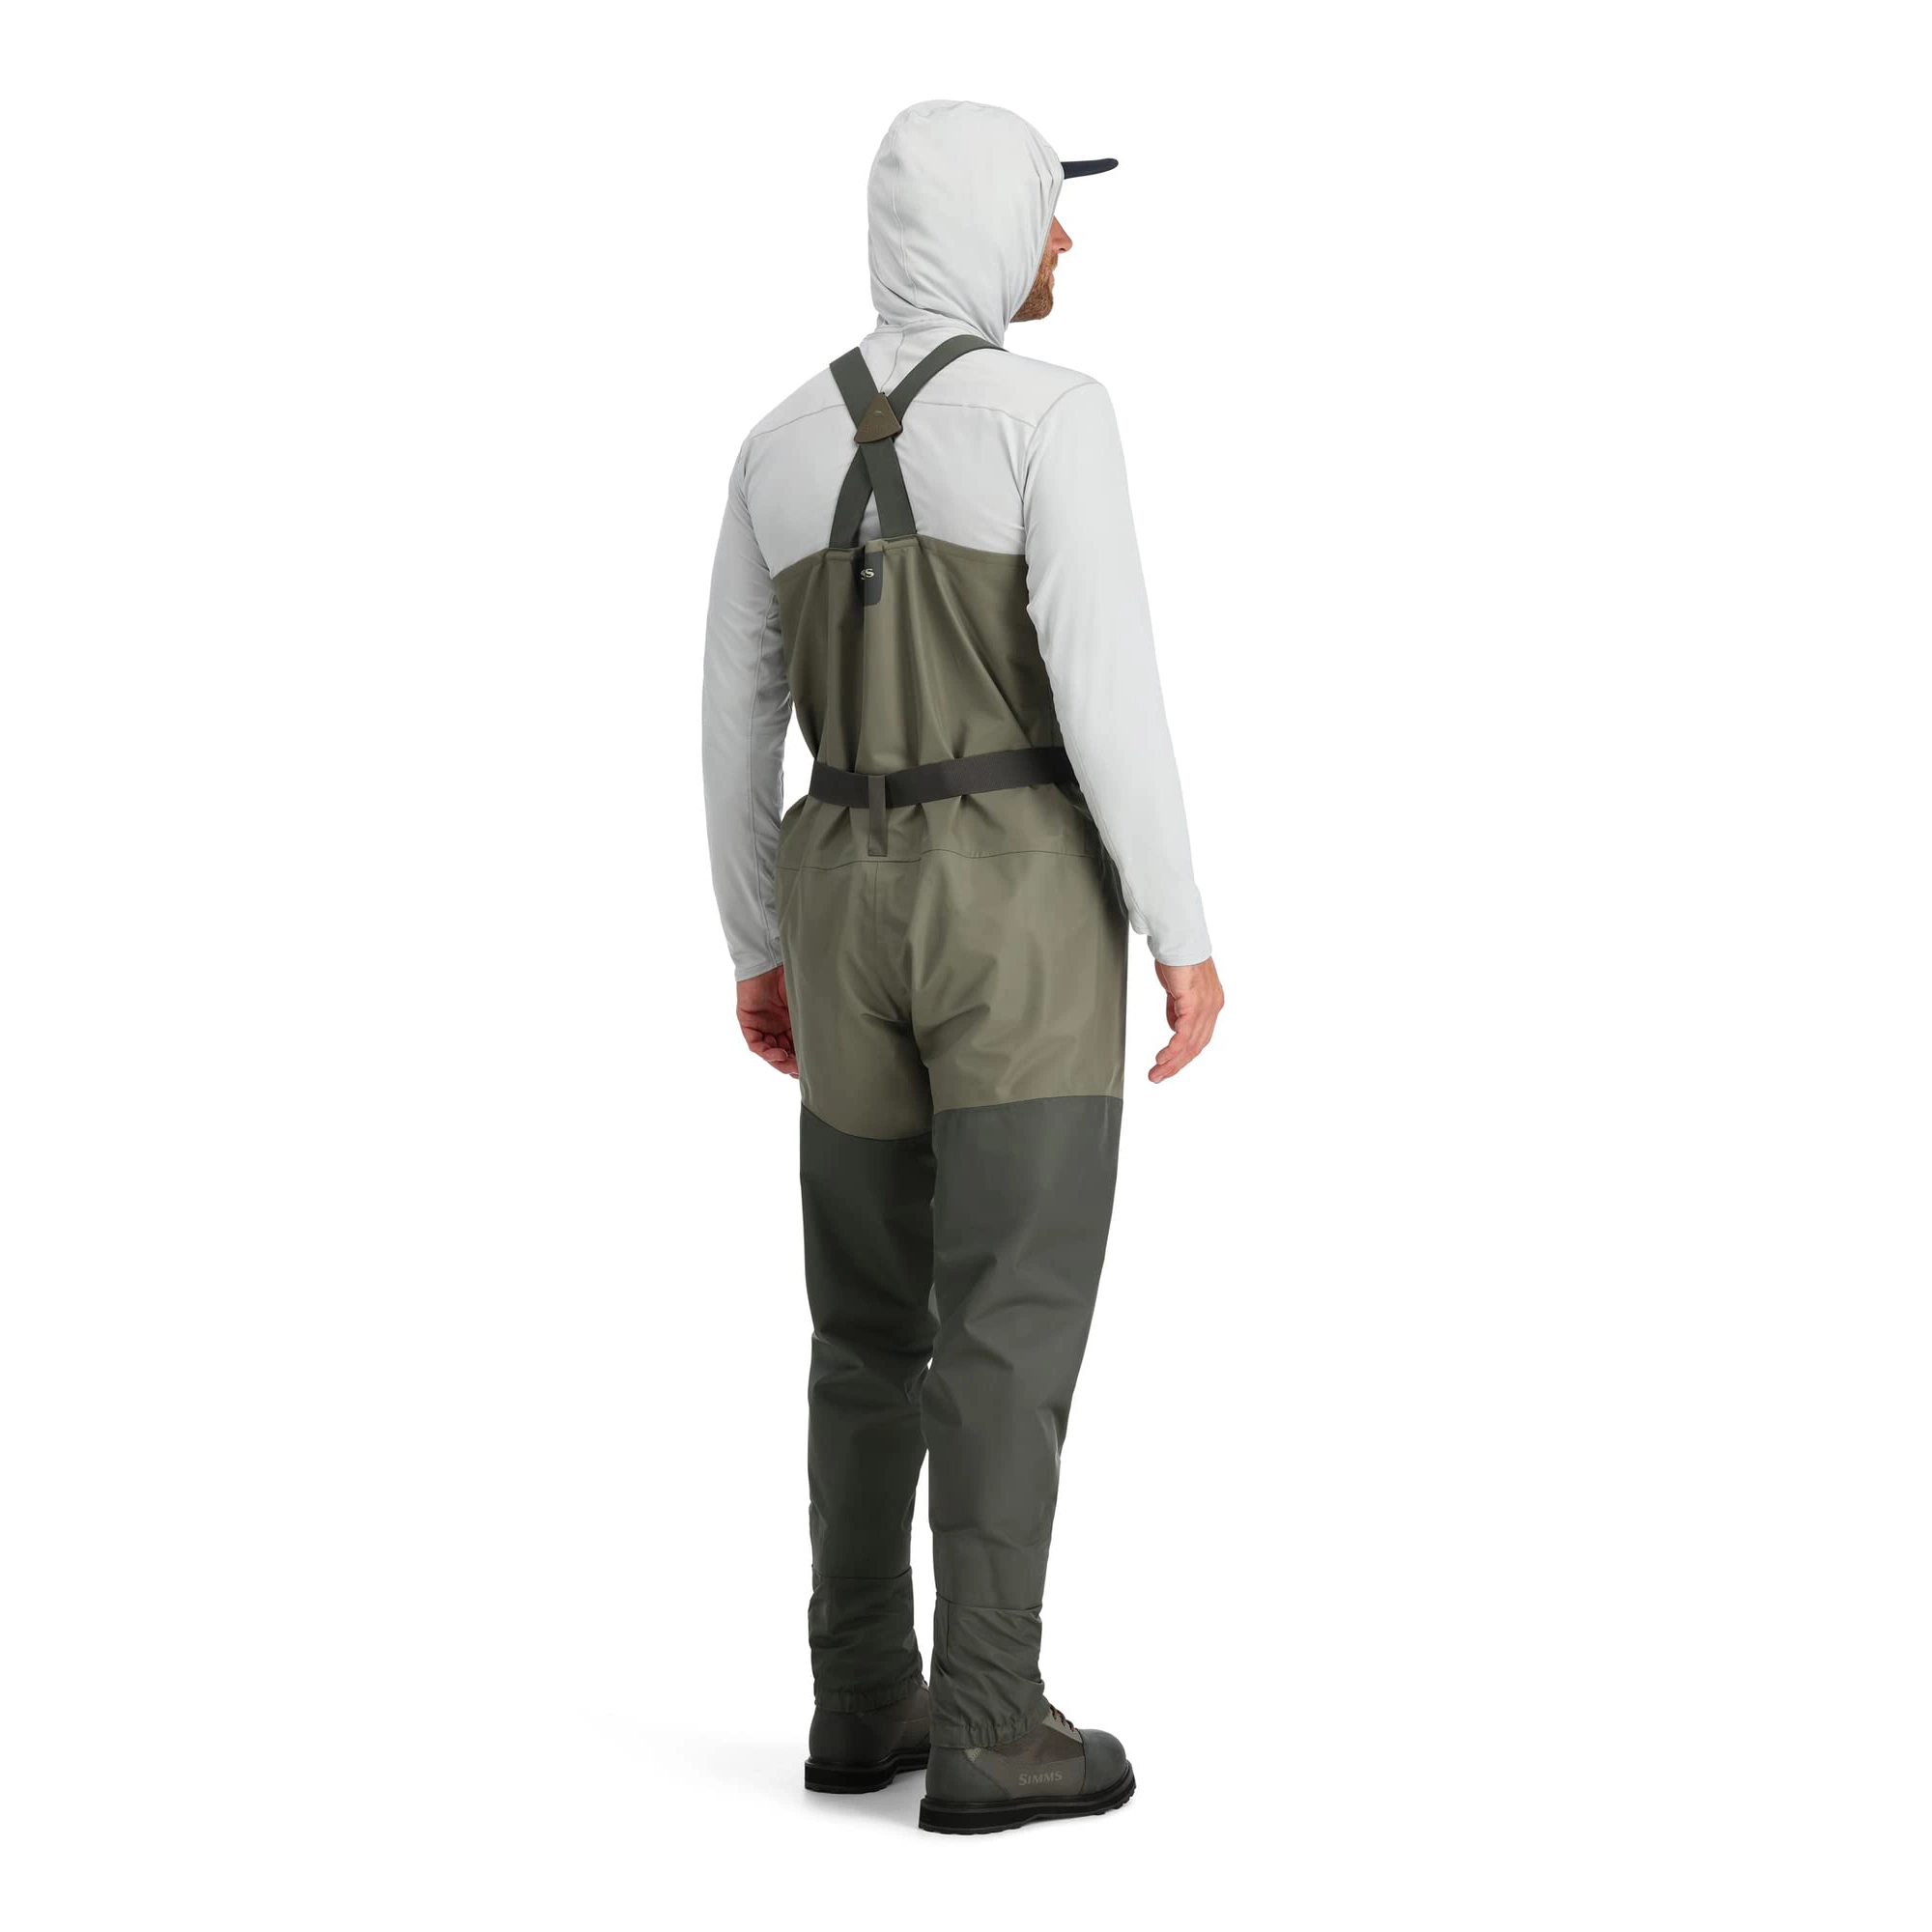 Pantalons de pêche imperméables en nylon sur mesure avec bottes, cuissardes de chasse.